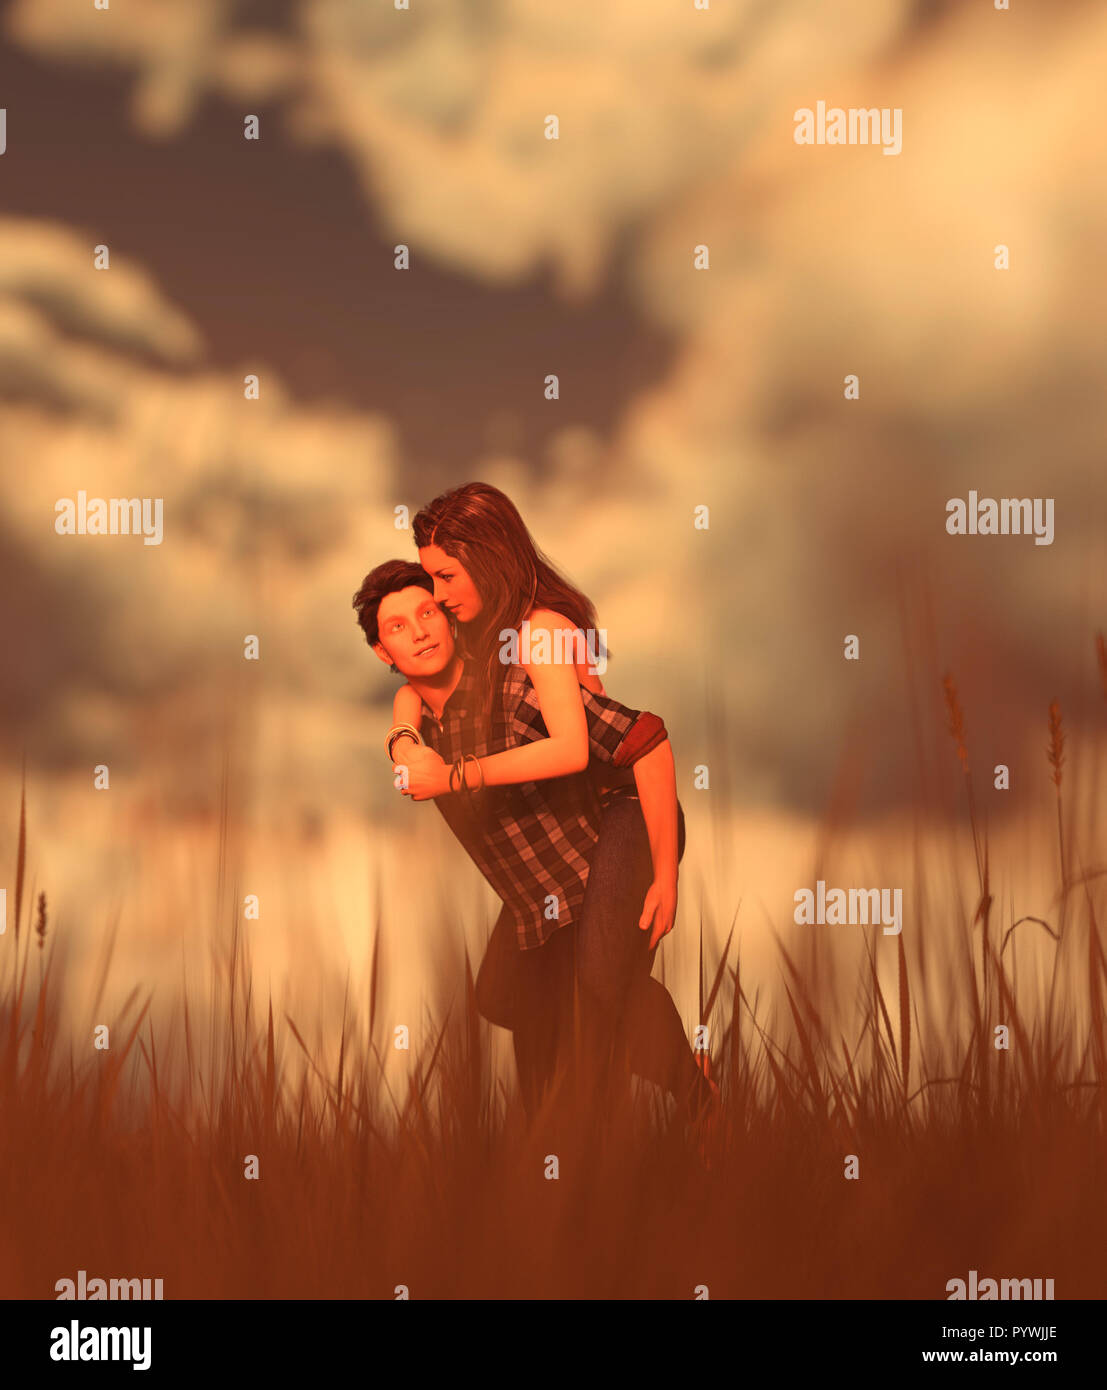 https://c8.alamy.com/comp/PYWJJE/romantic-couple-in-grass-field3d-rendering-PYWJJE.jpg